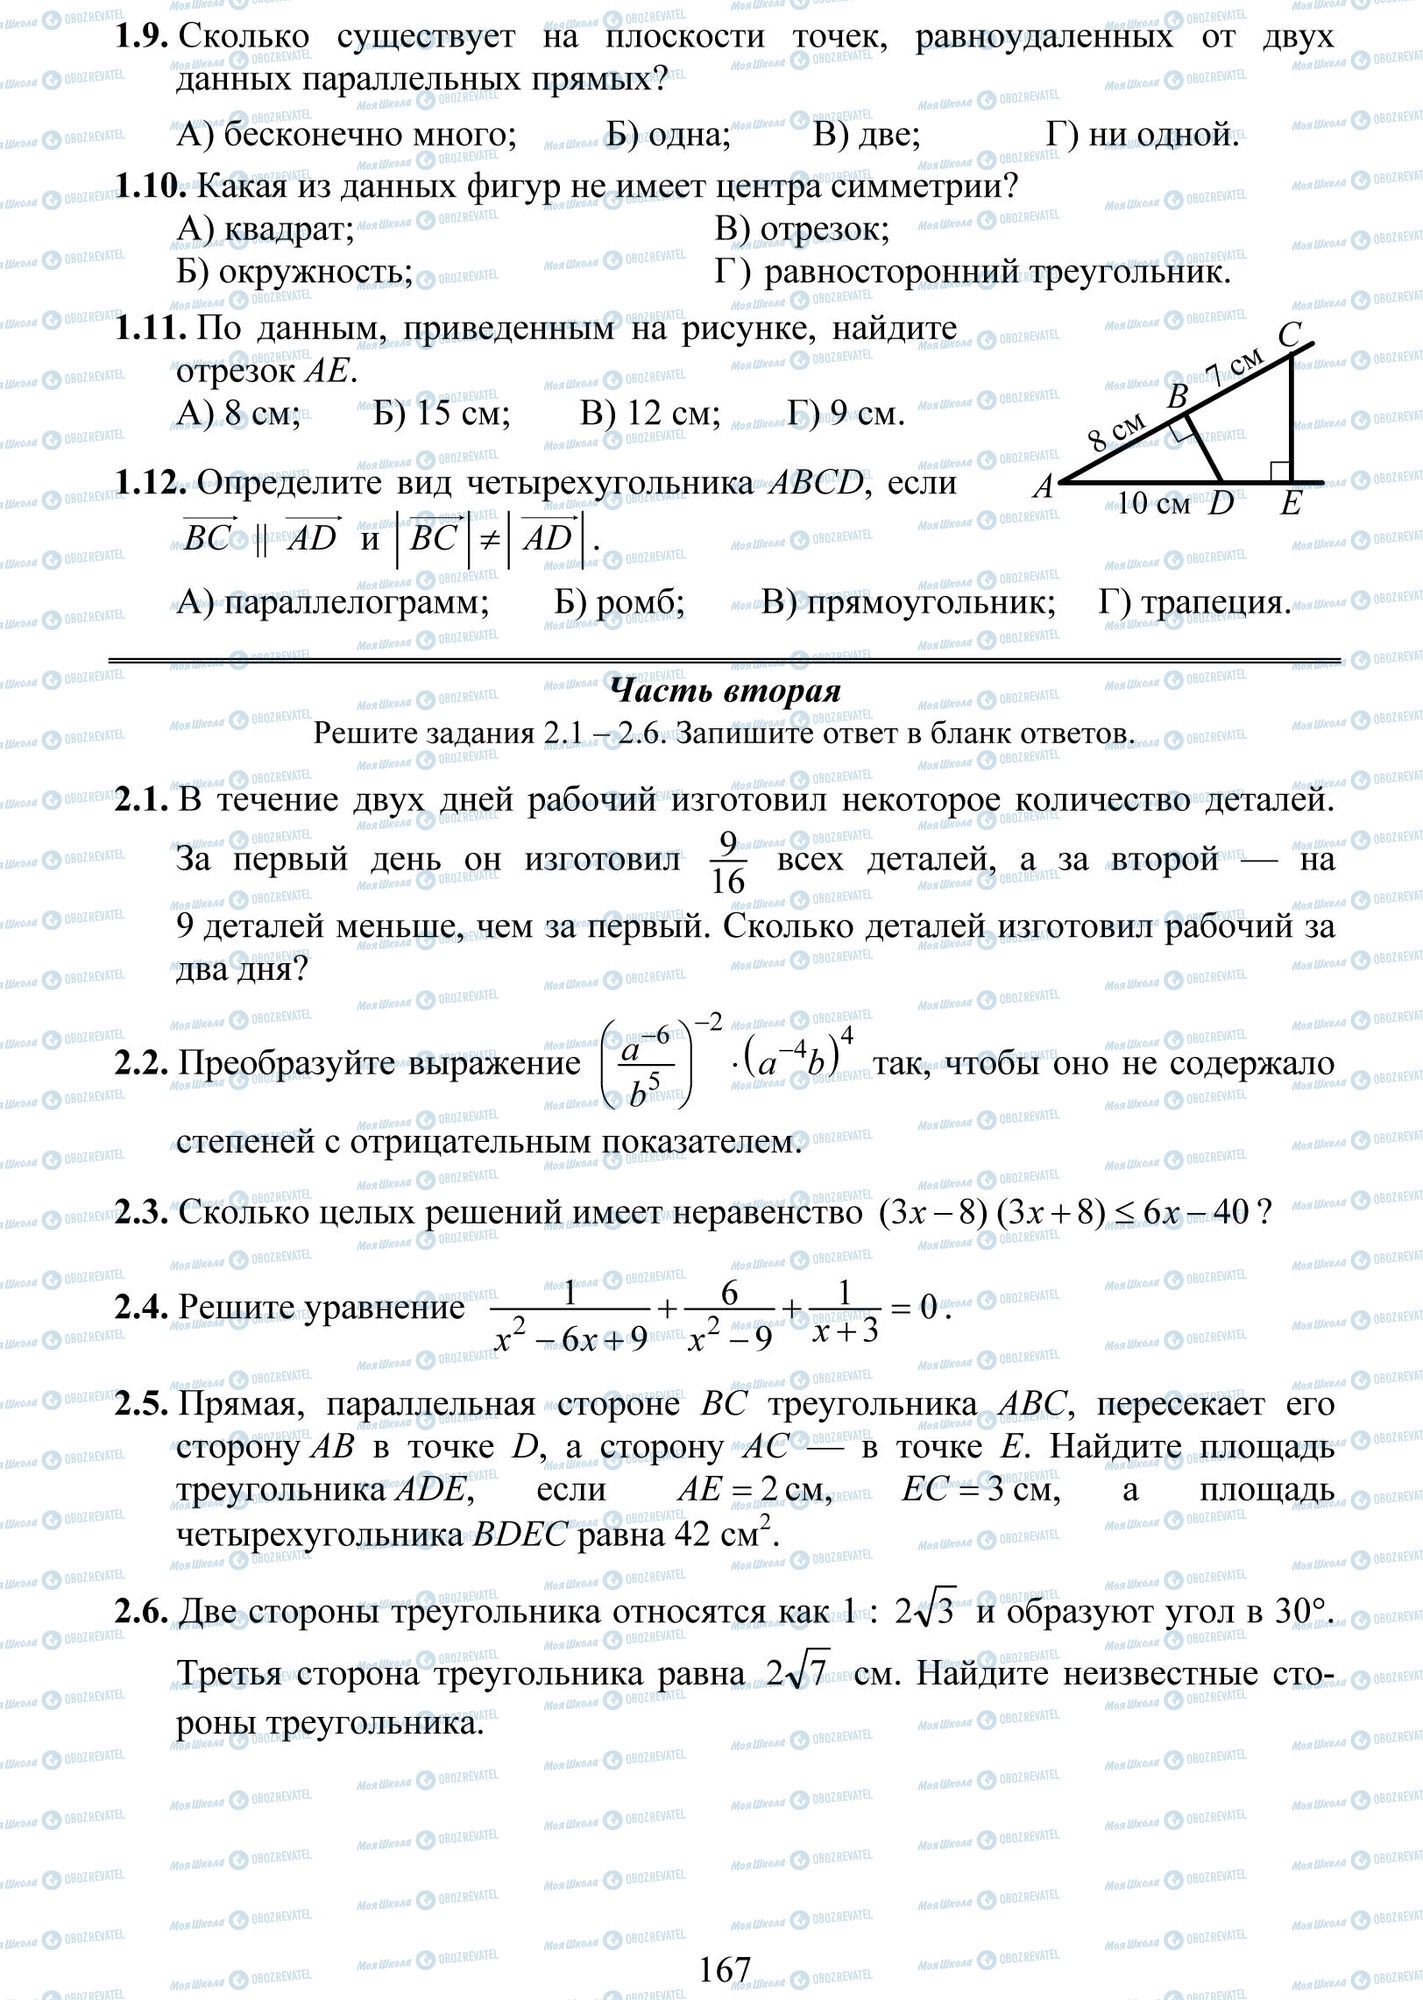 ДПА Математика 9 класс страница 9-12